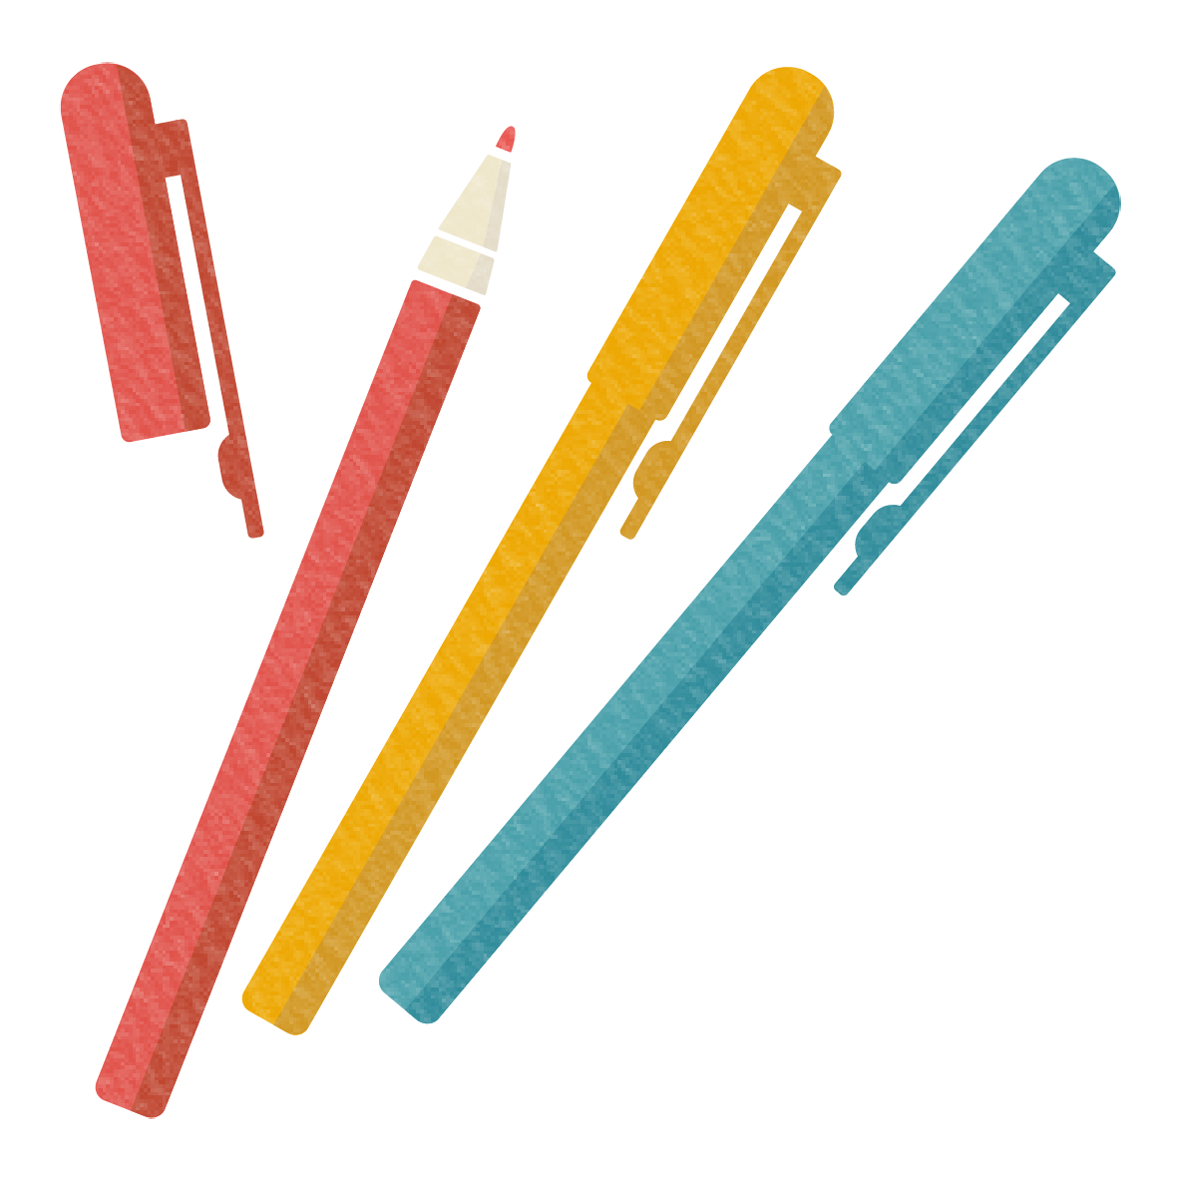 赤・黄・青のカラーペンのイラスト素材です。<br>
幼稚園や小学校の図画工作の持ち物をお知らせするプリントなどの飾り付けにお使いいただけます。
大人の方の参考書のワンポイントイラストとしてのご利用もおすすめです♪